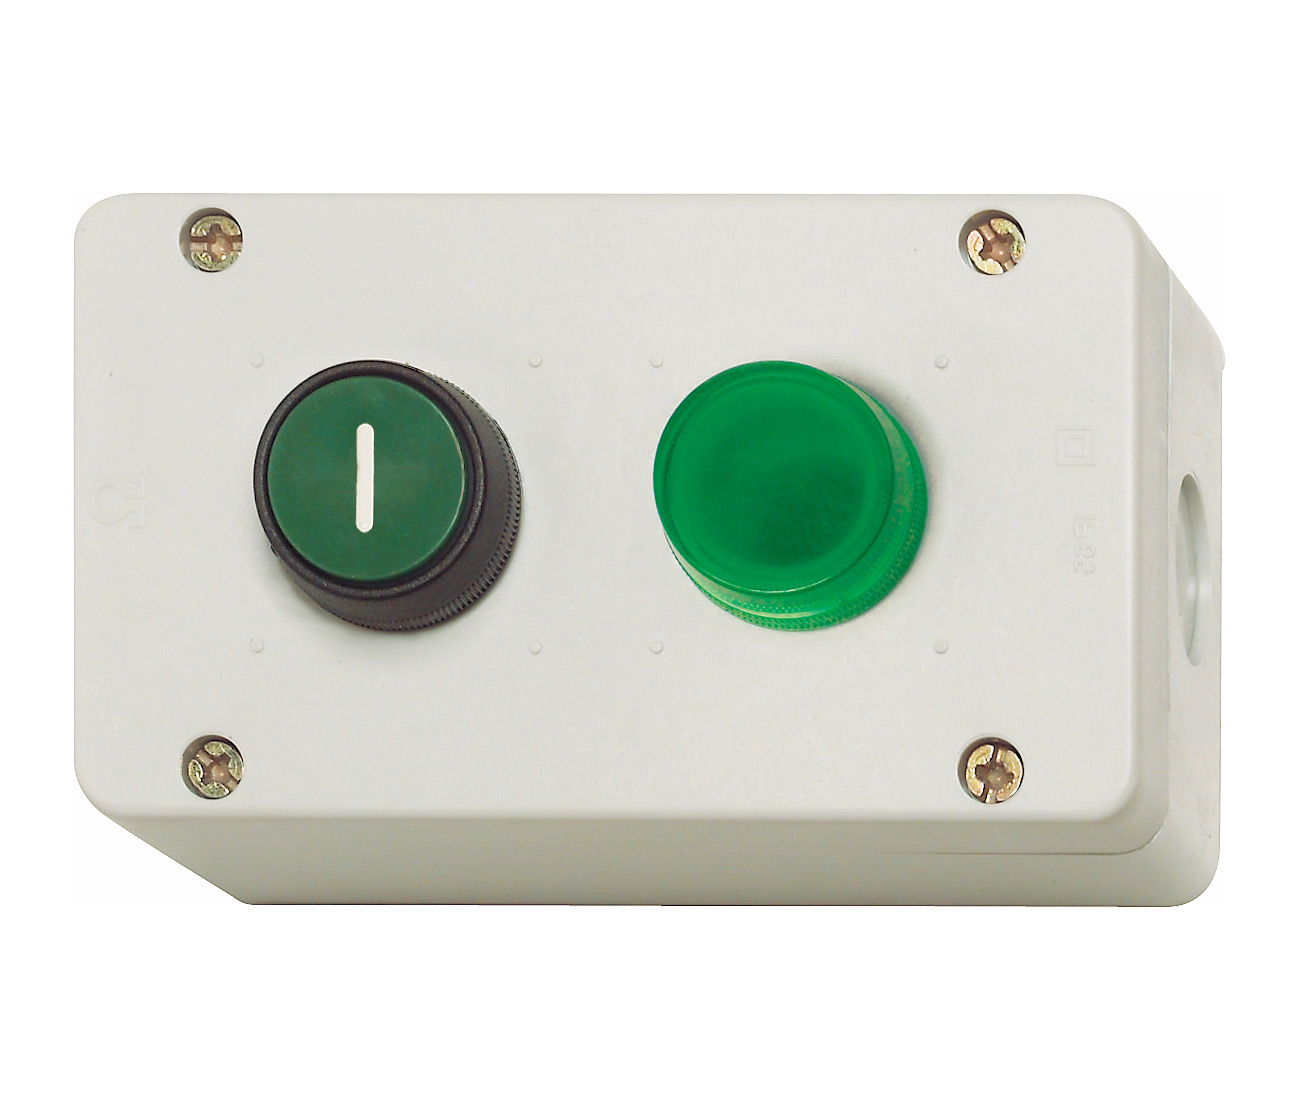 Кнопка"On" и зеленый индикатор в корпусе BG, IP67 BG11 GN/GN Benedict